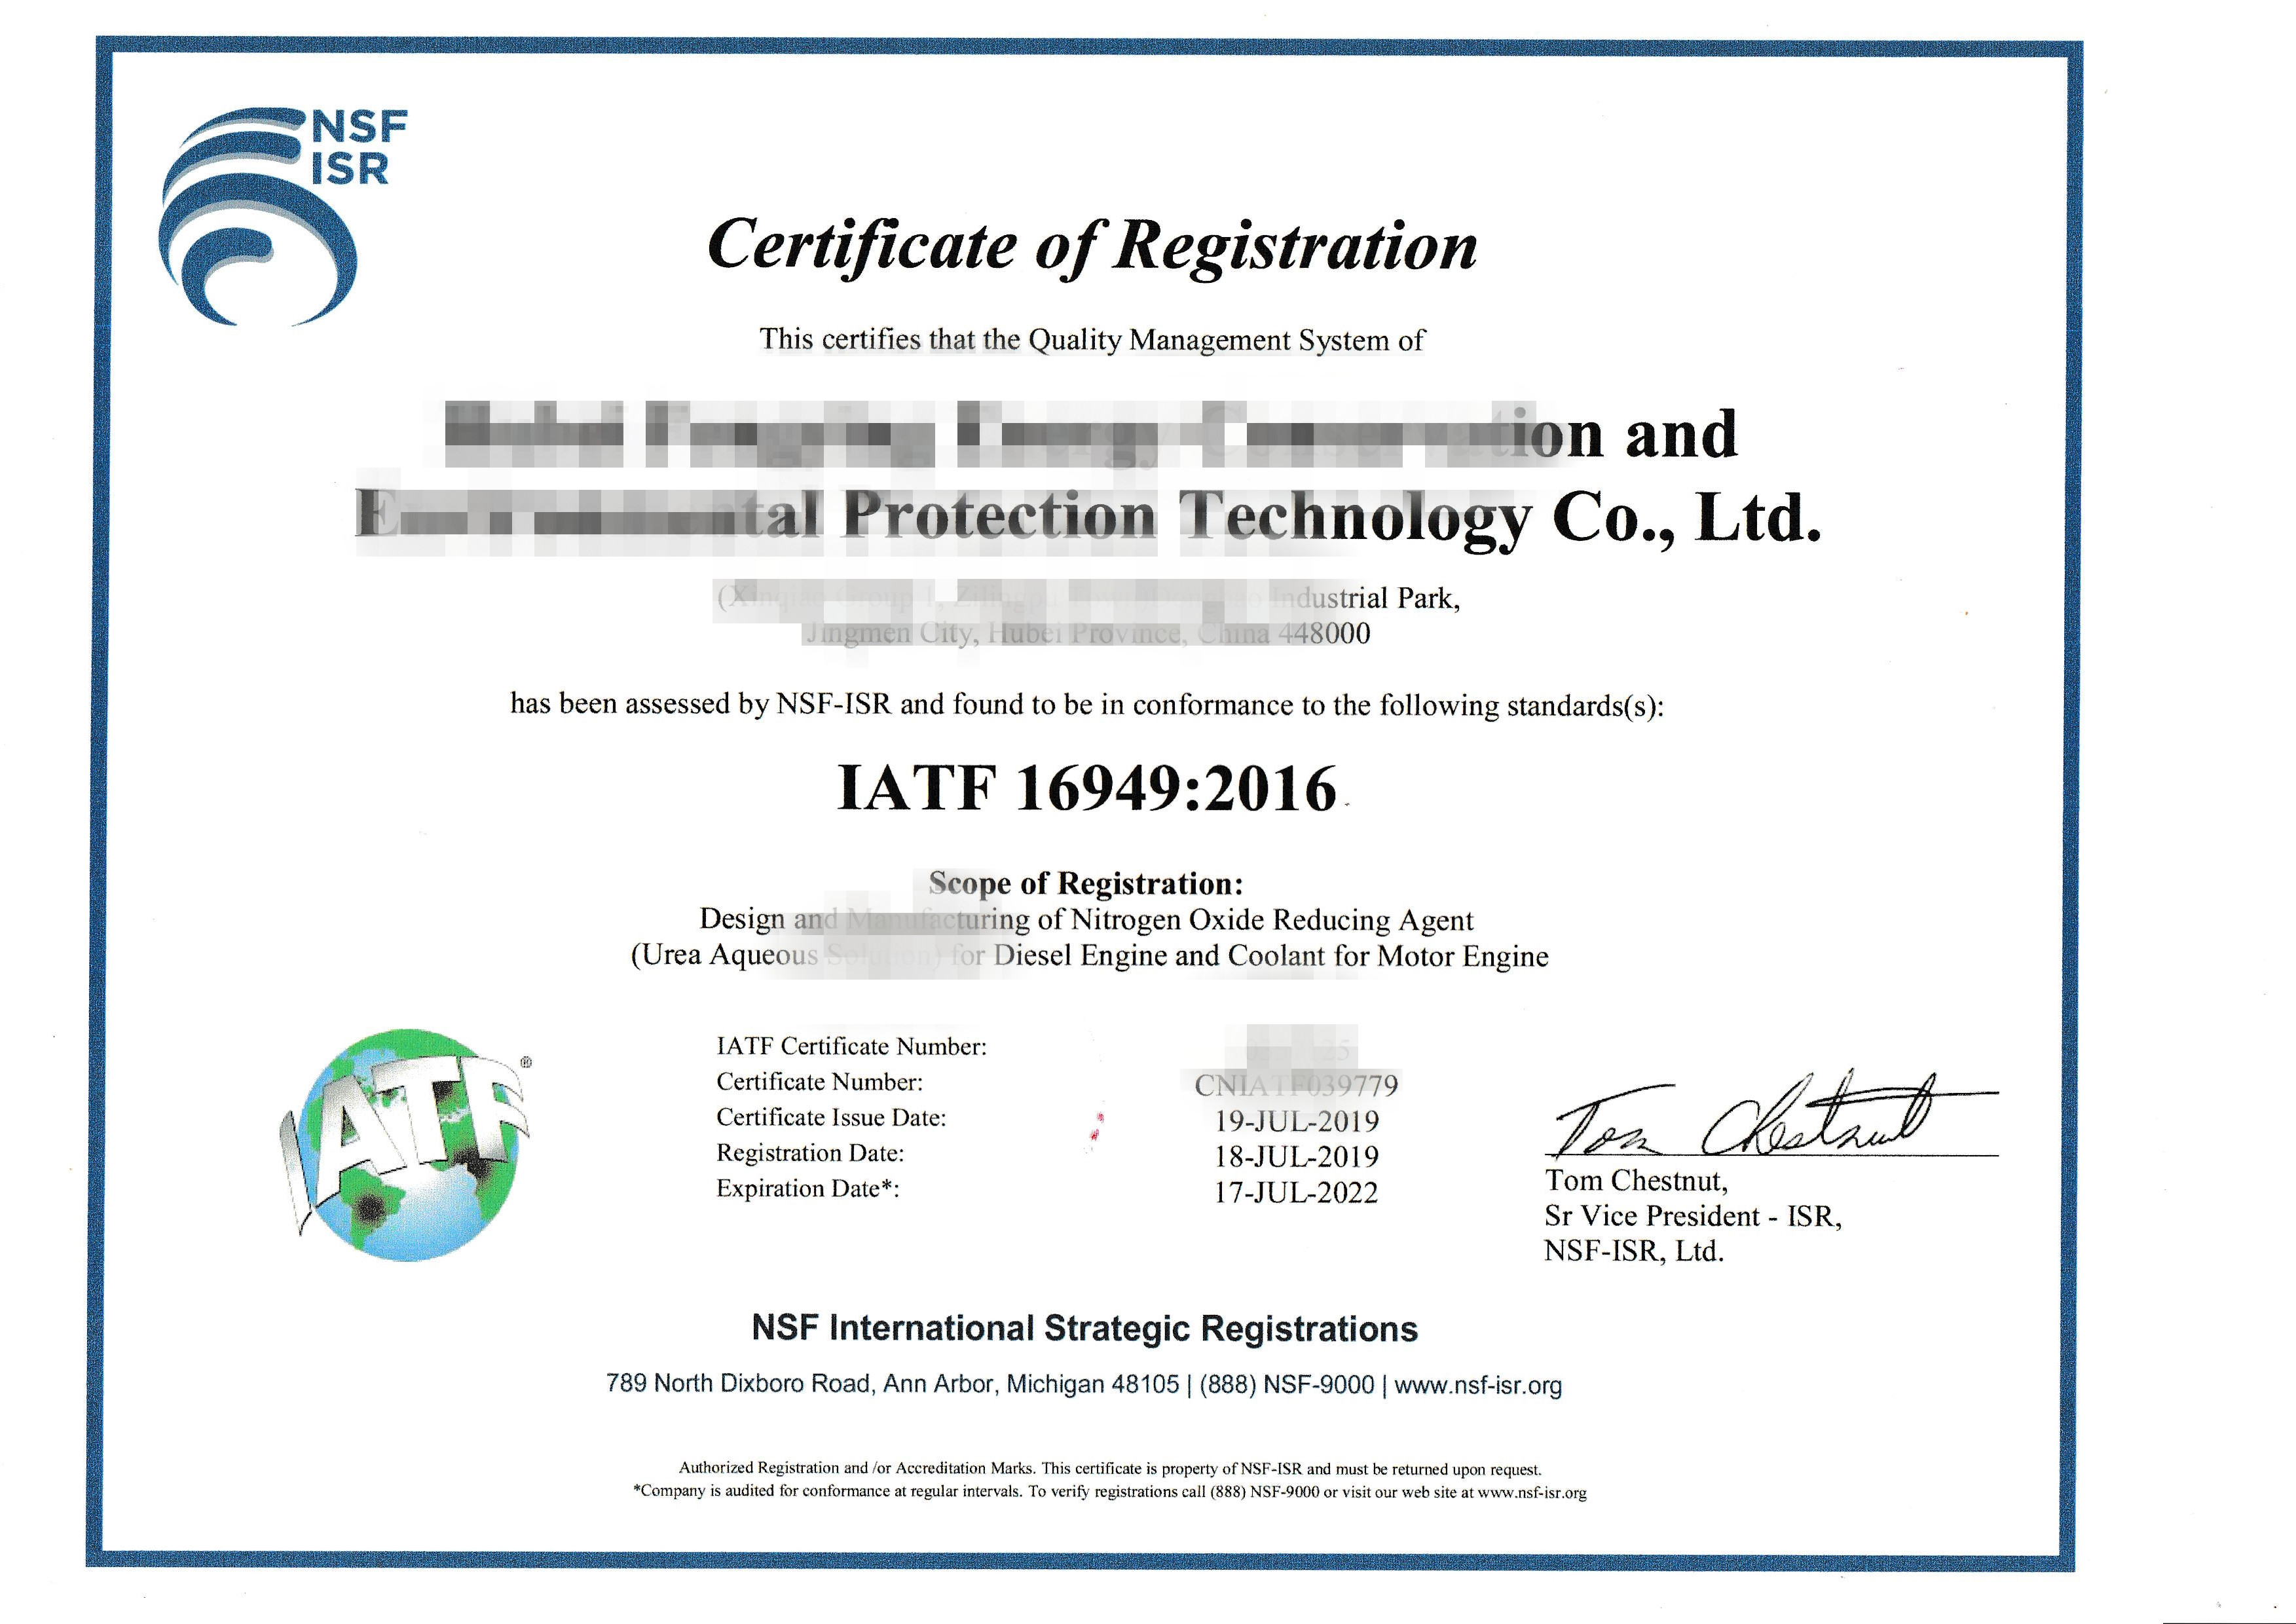 致佳咨询近期辅导某车用化工企业成功通过美国NSF的IATF16949认证!